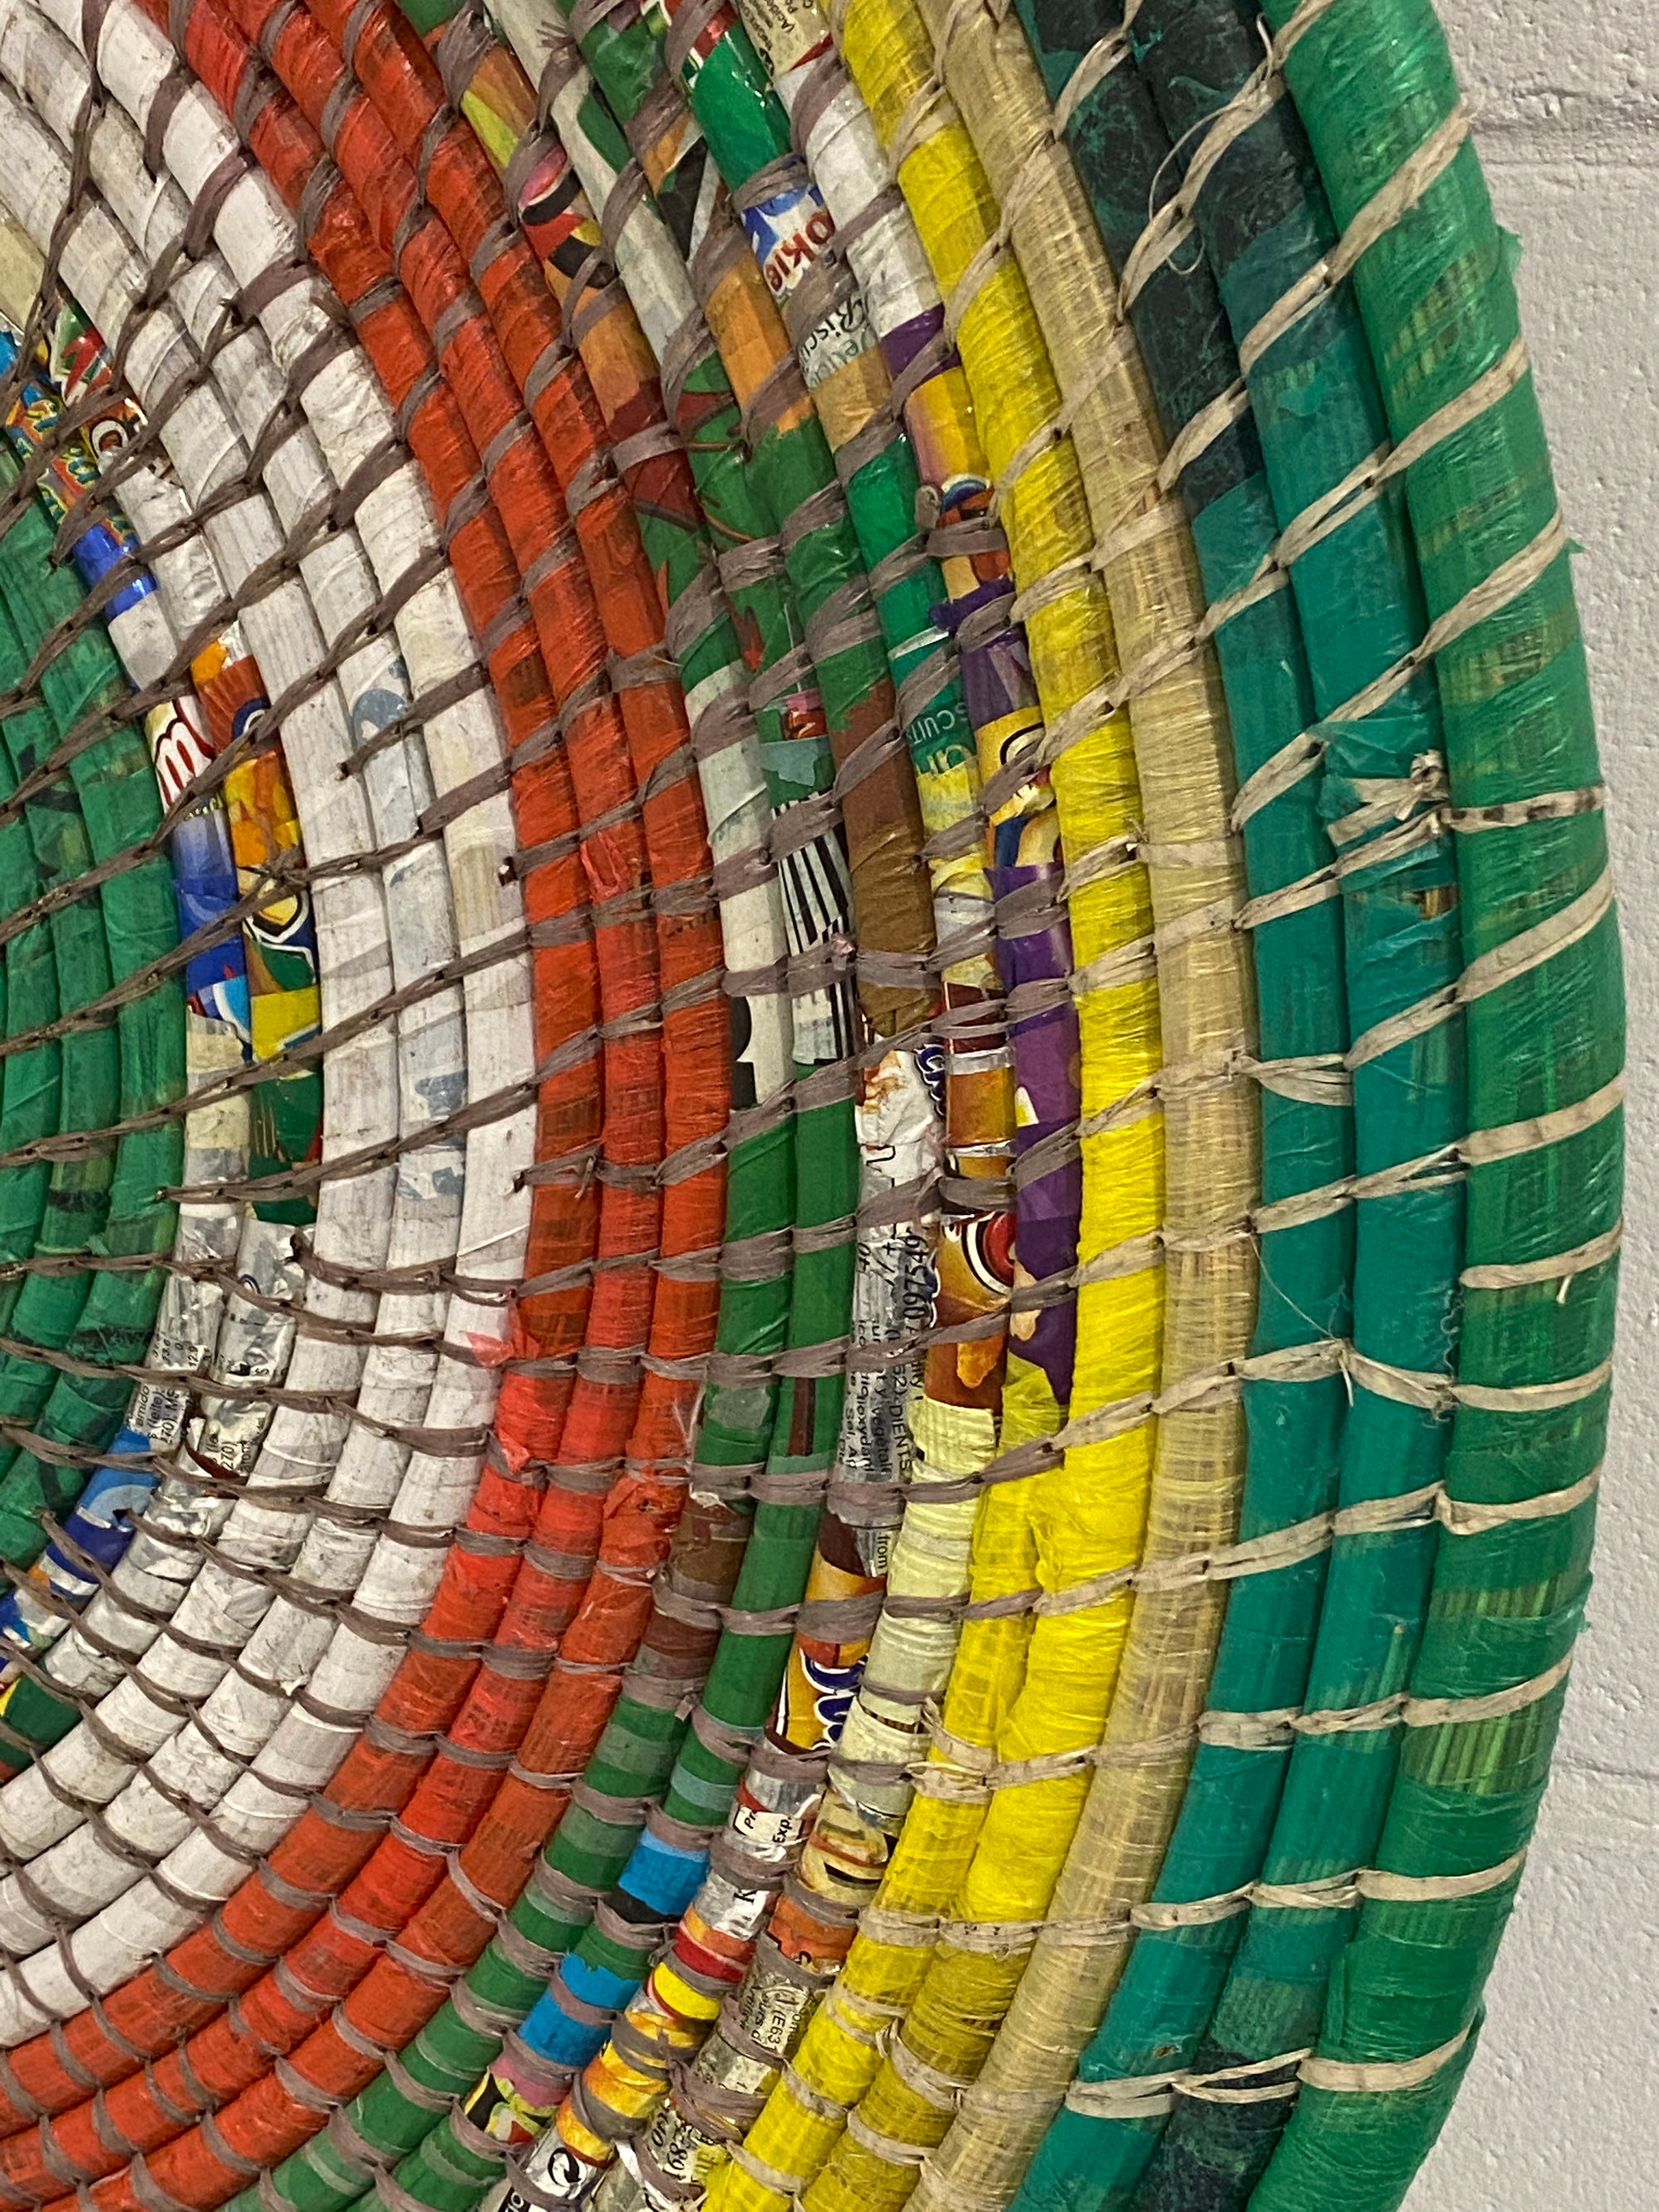 Zambian Wall Basket - (TR43.5)